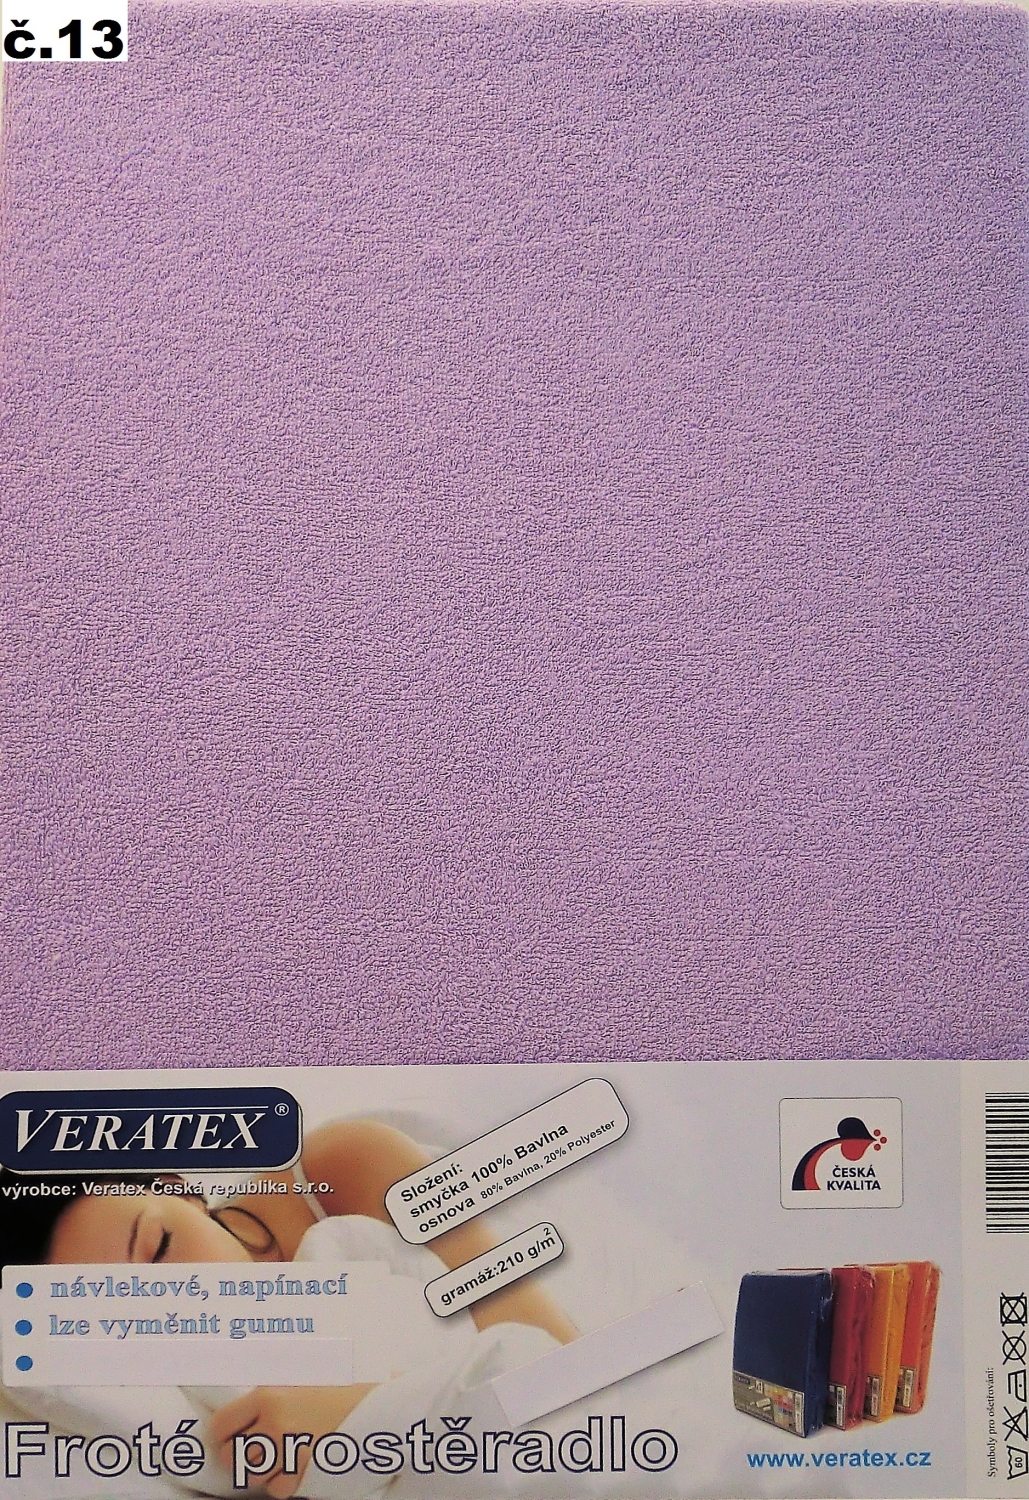 Veratex Froté prostěradlo dvoulůžko 180x200/16cm (č.13-fialková)